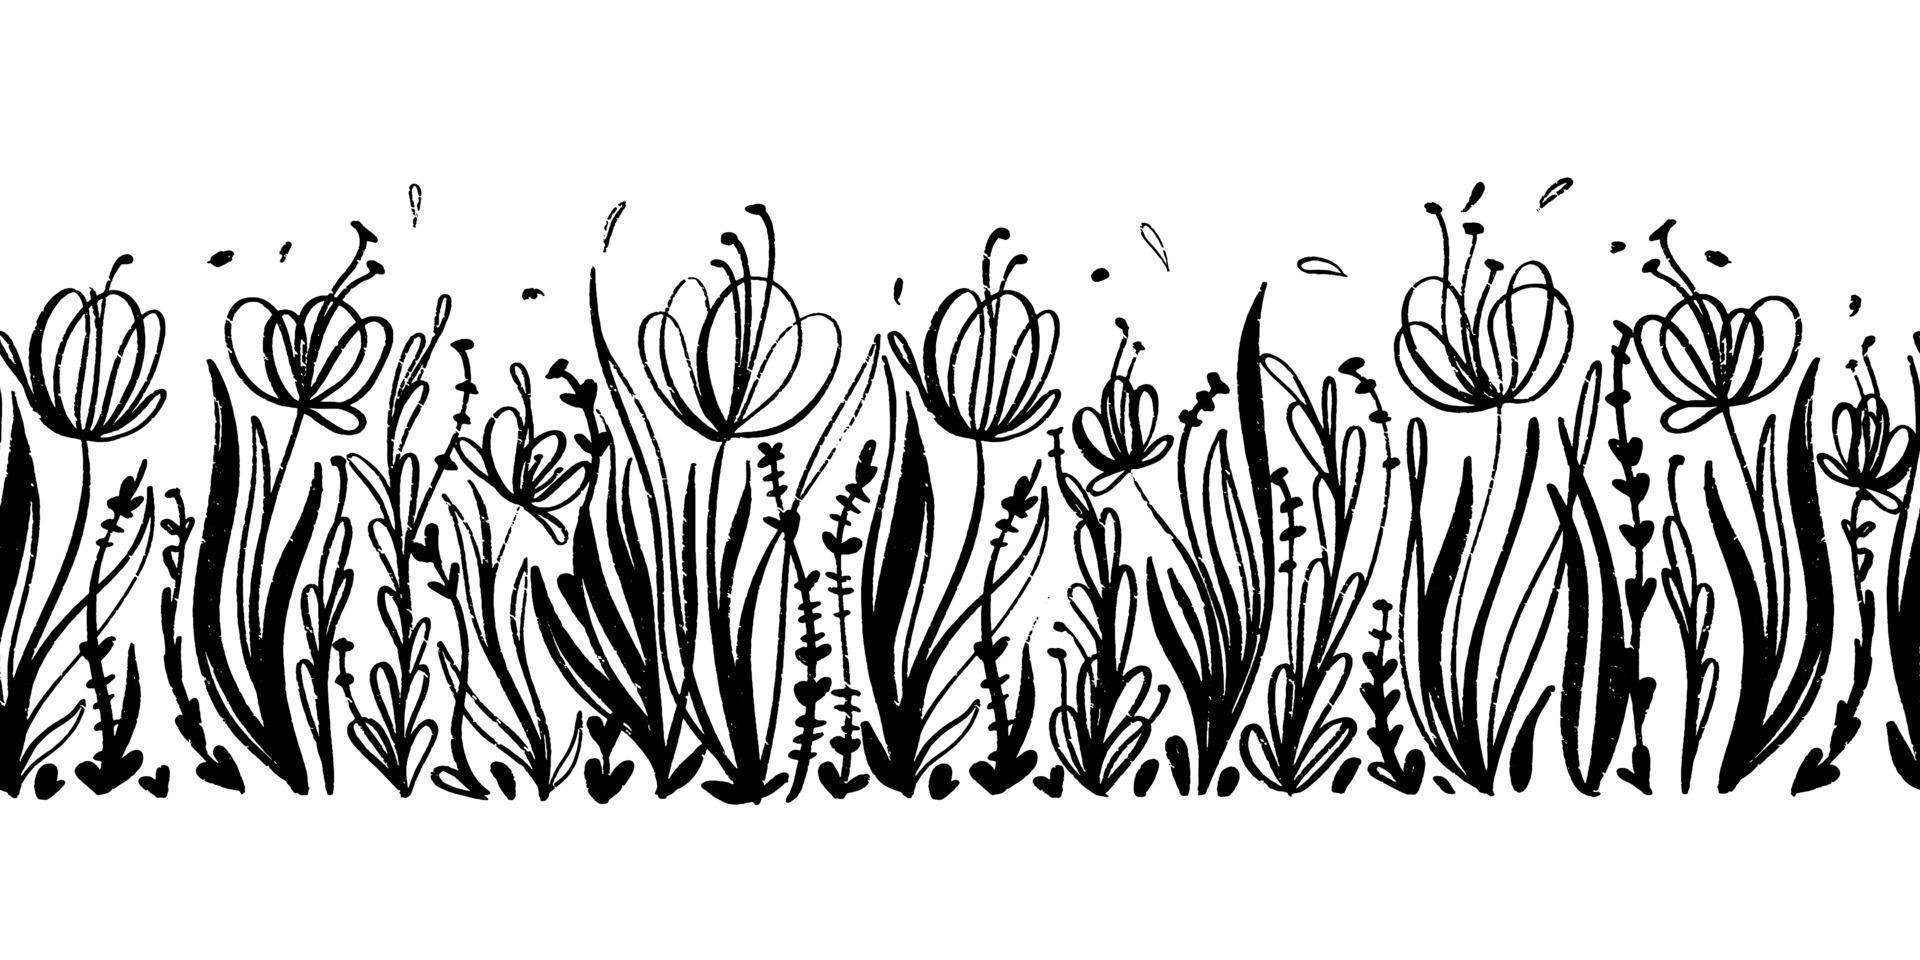 bordure transparente de vecteur avec des éléments floraux de dessin à l'encre. fond horizontal monochrome dessiné à la main avec des coquelicots et de l'herbe sauvage.